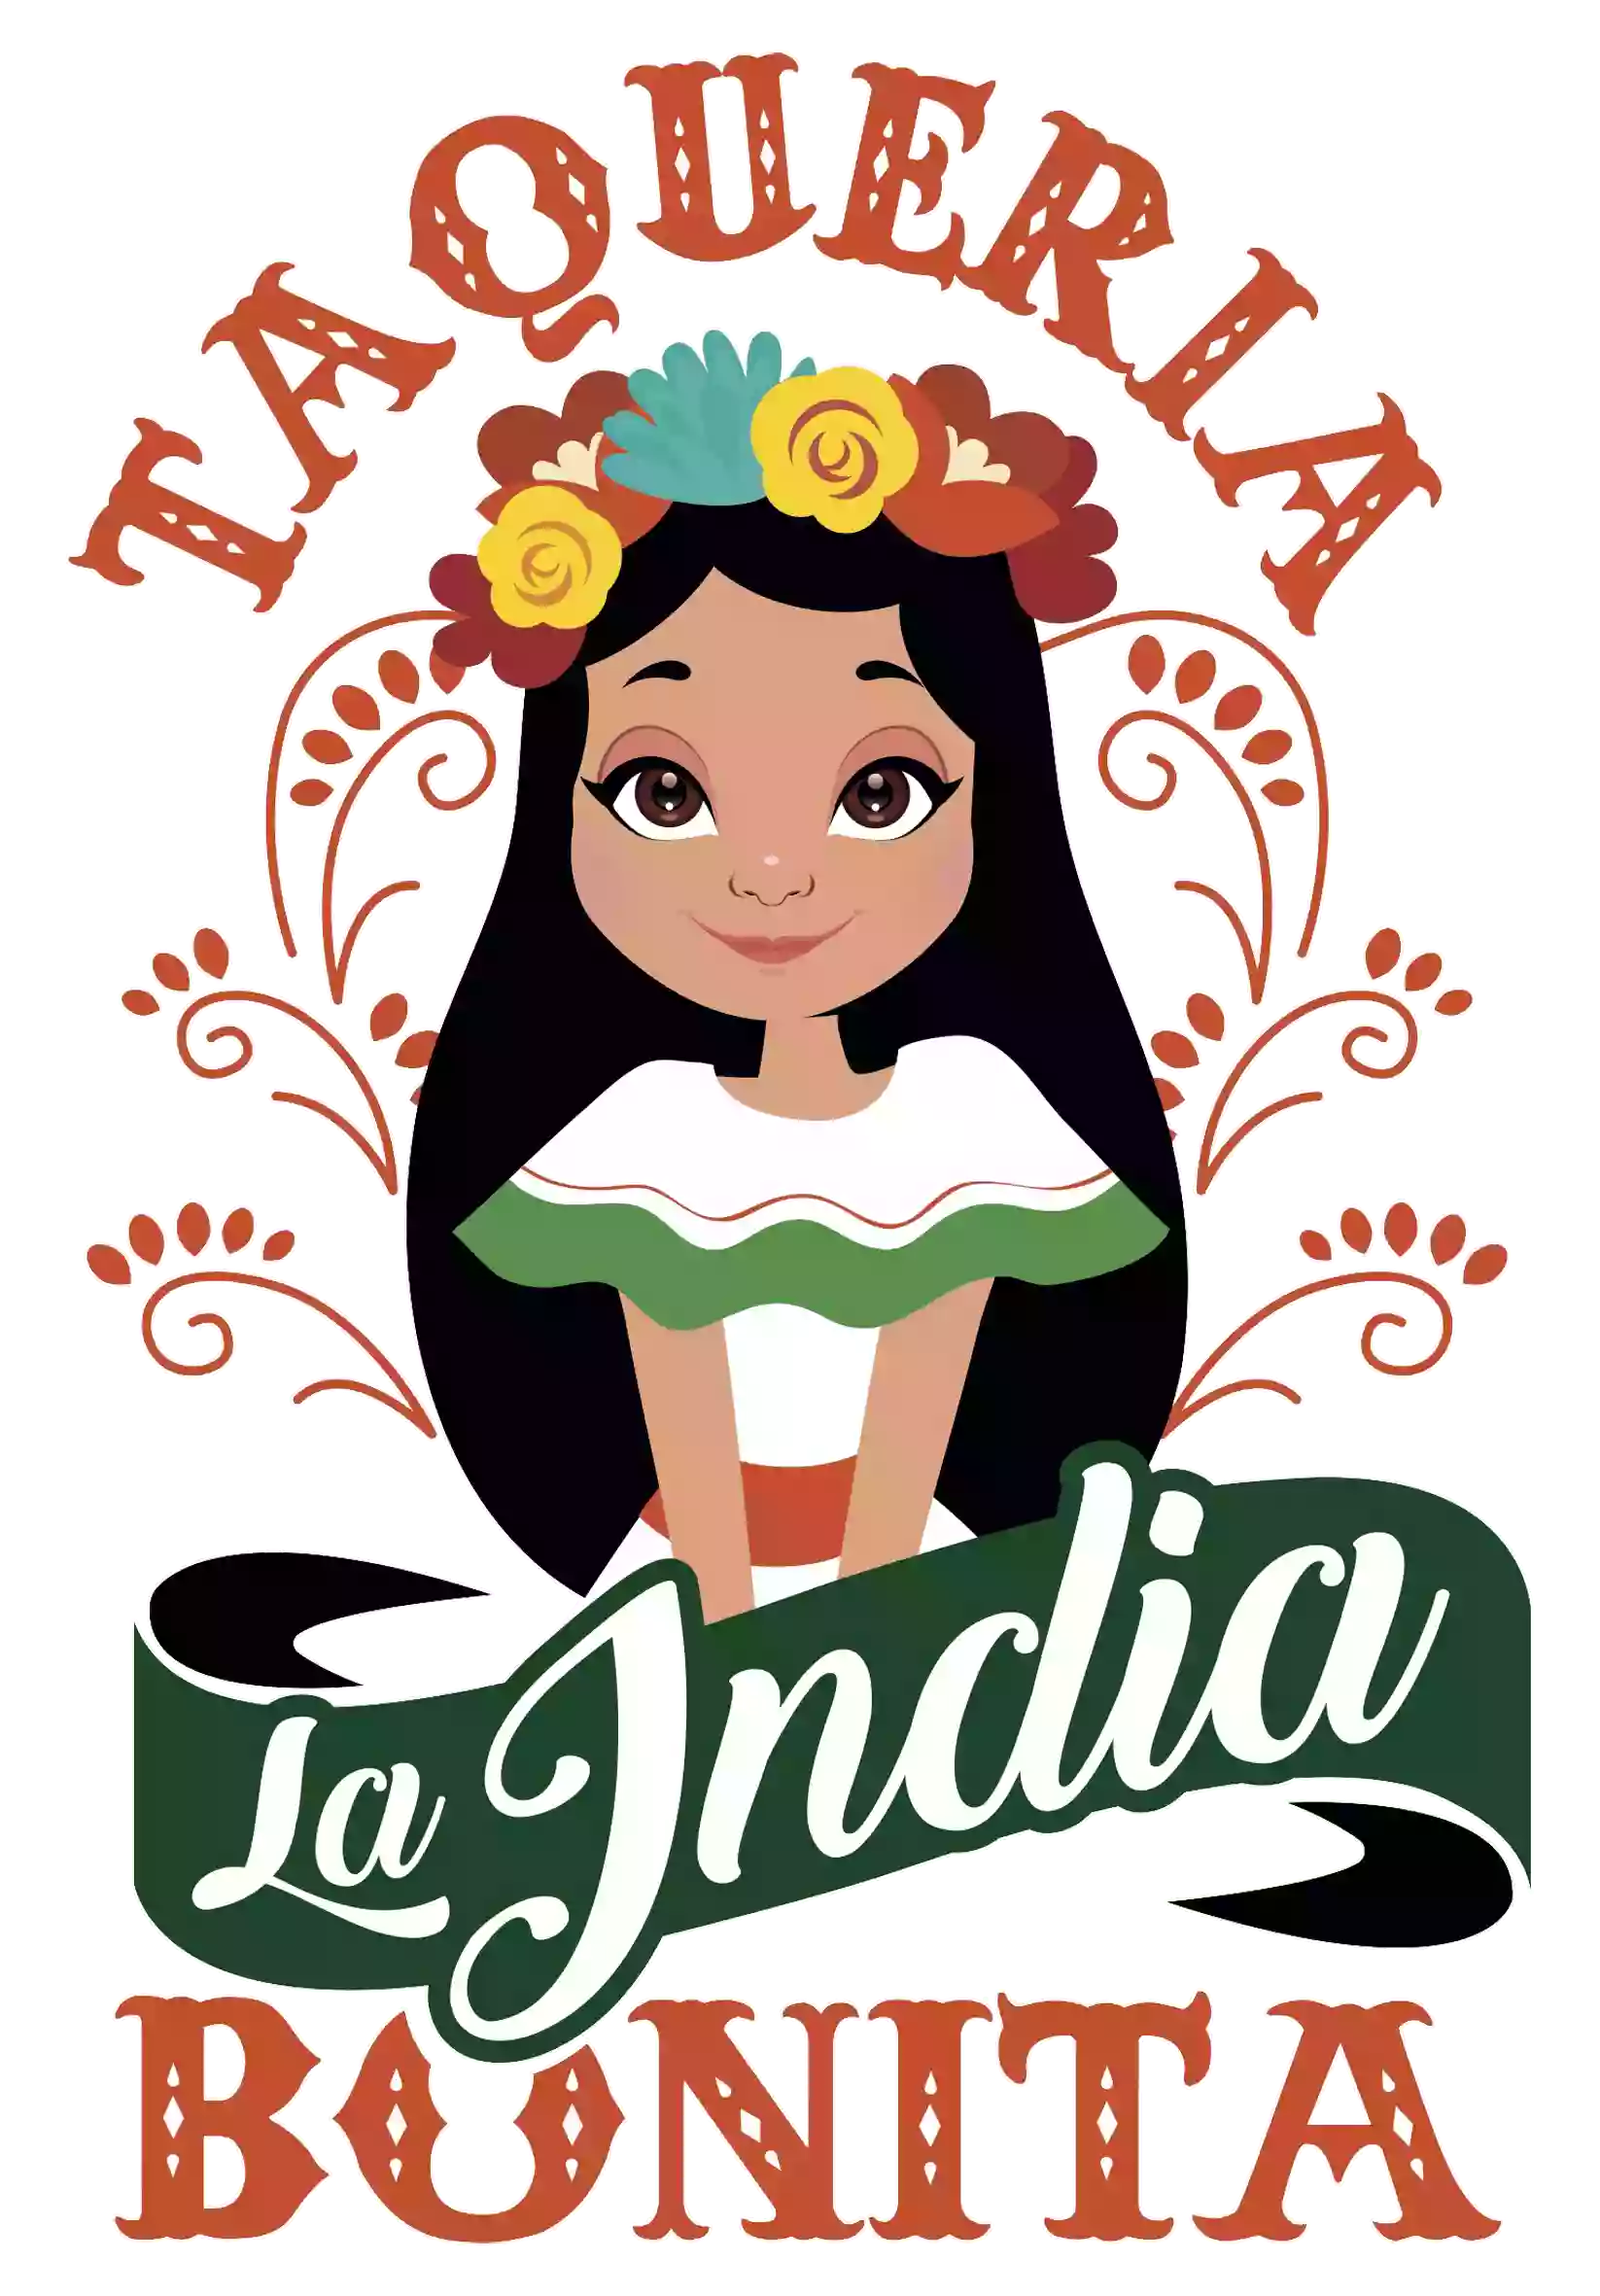 Taqueria La India Bonita (Taco Truck)